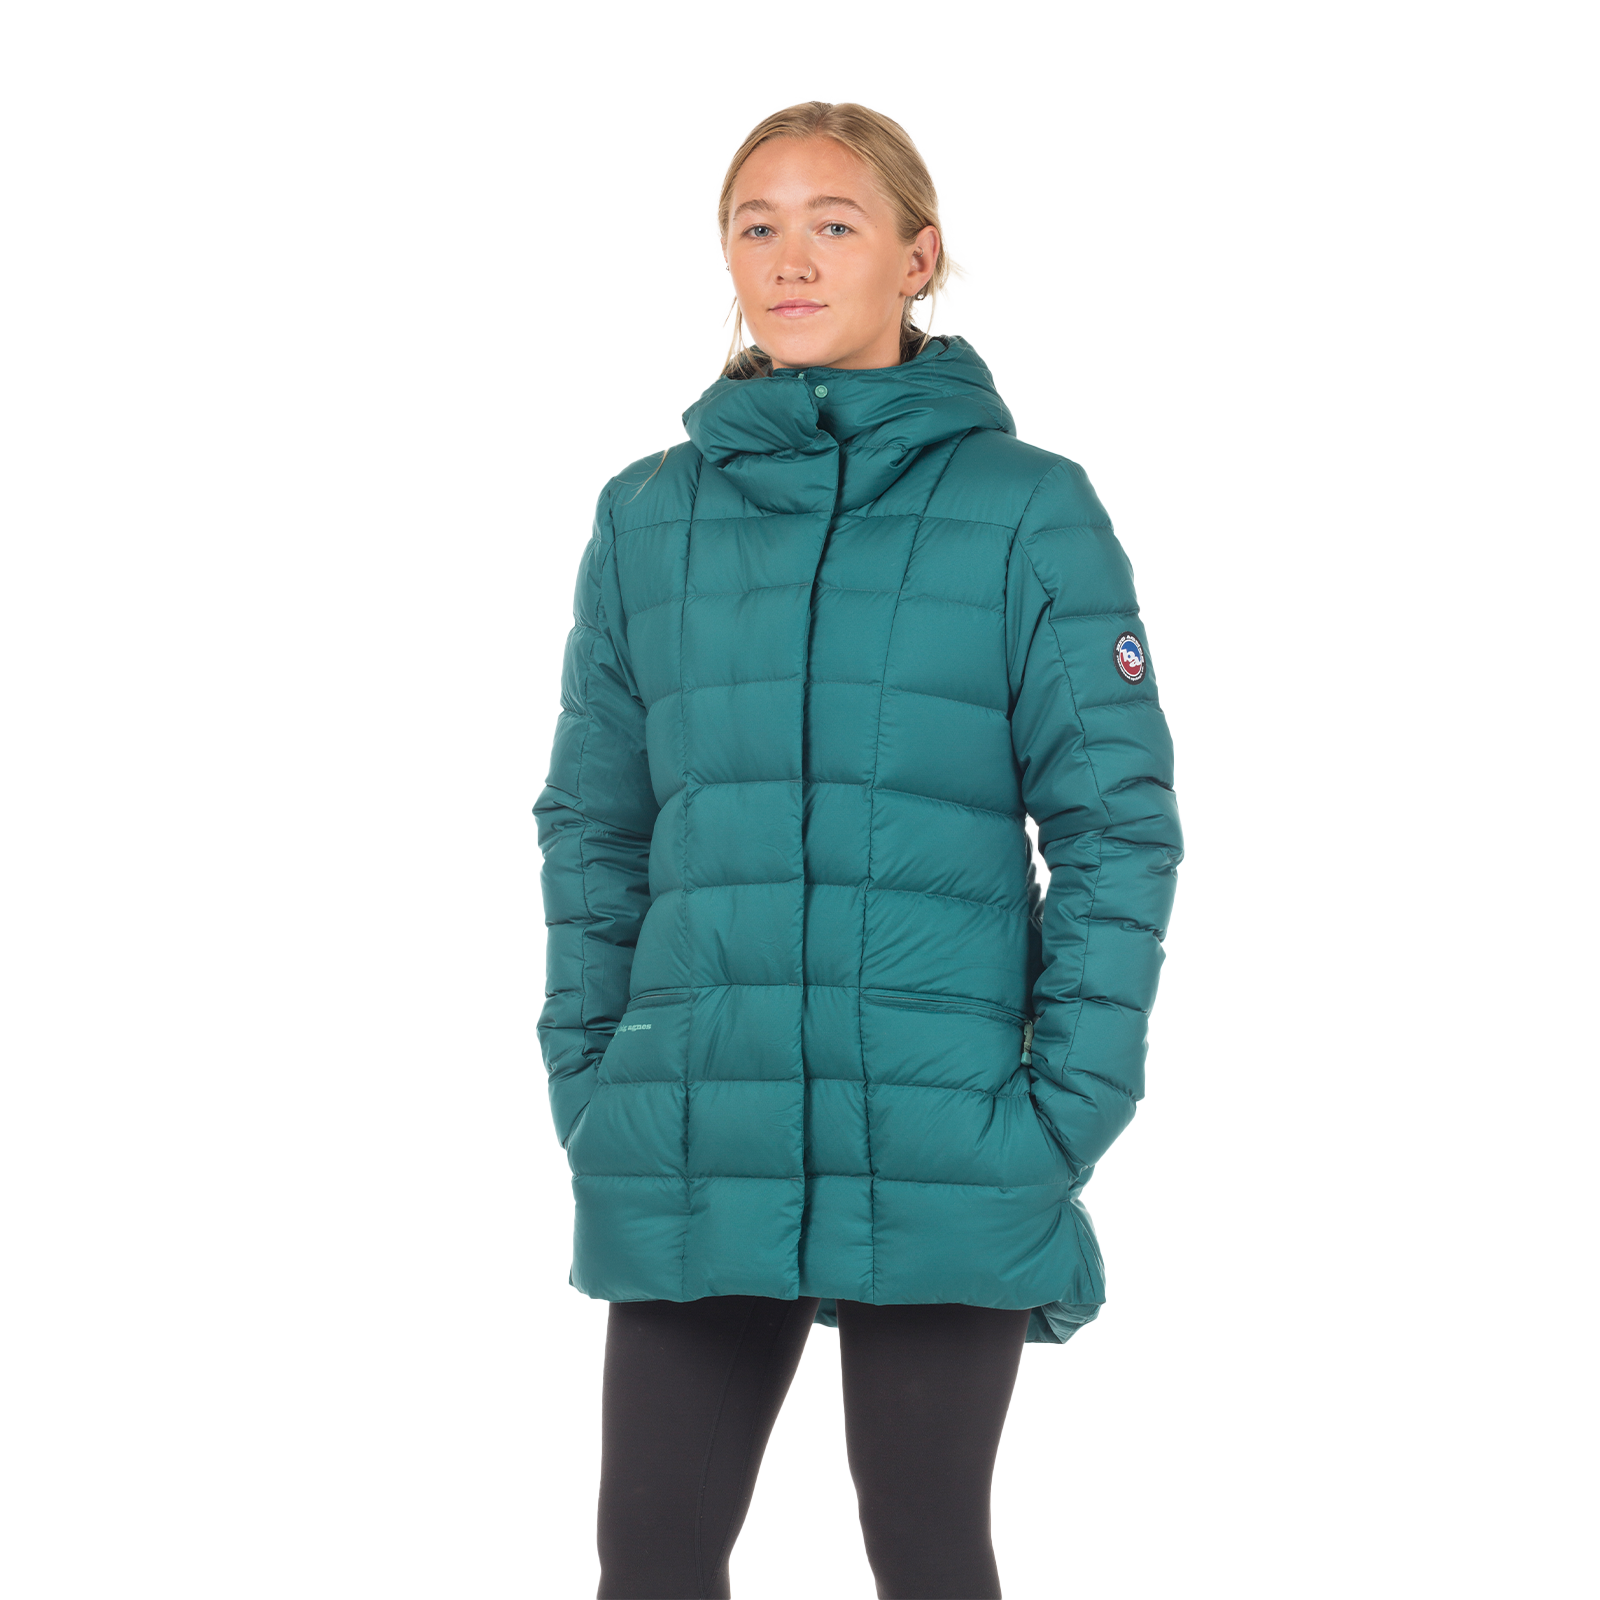 Women's Patagonia Puffer Down Jacket Turquoise Size Medium Full